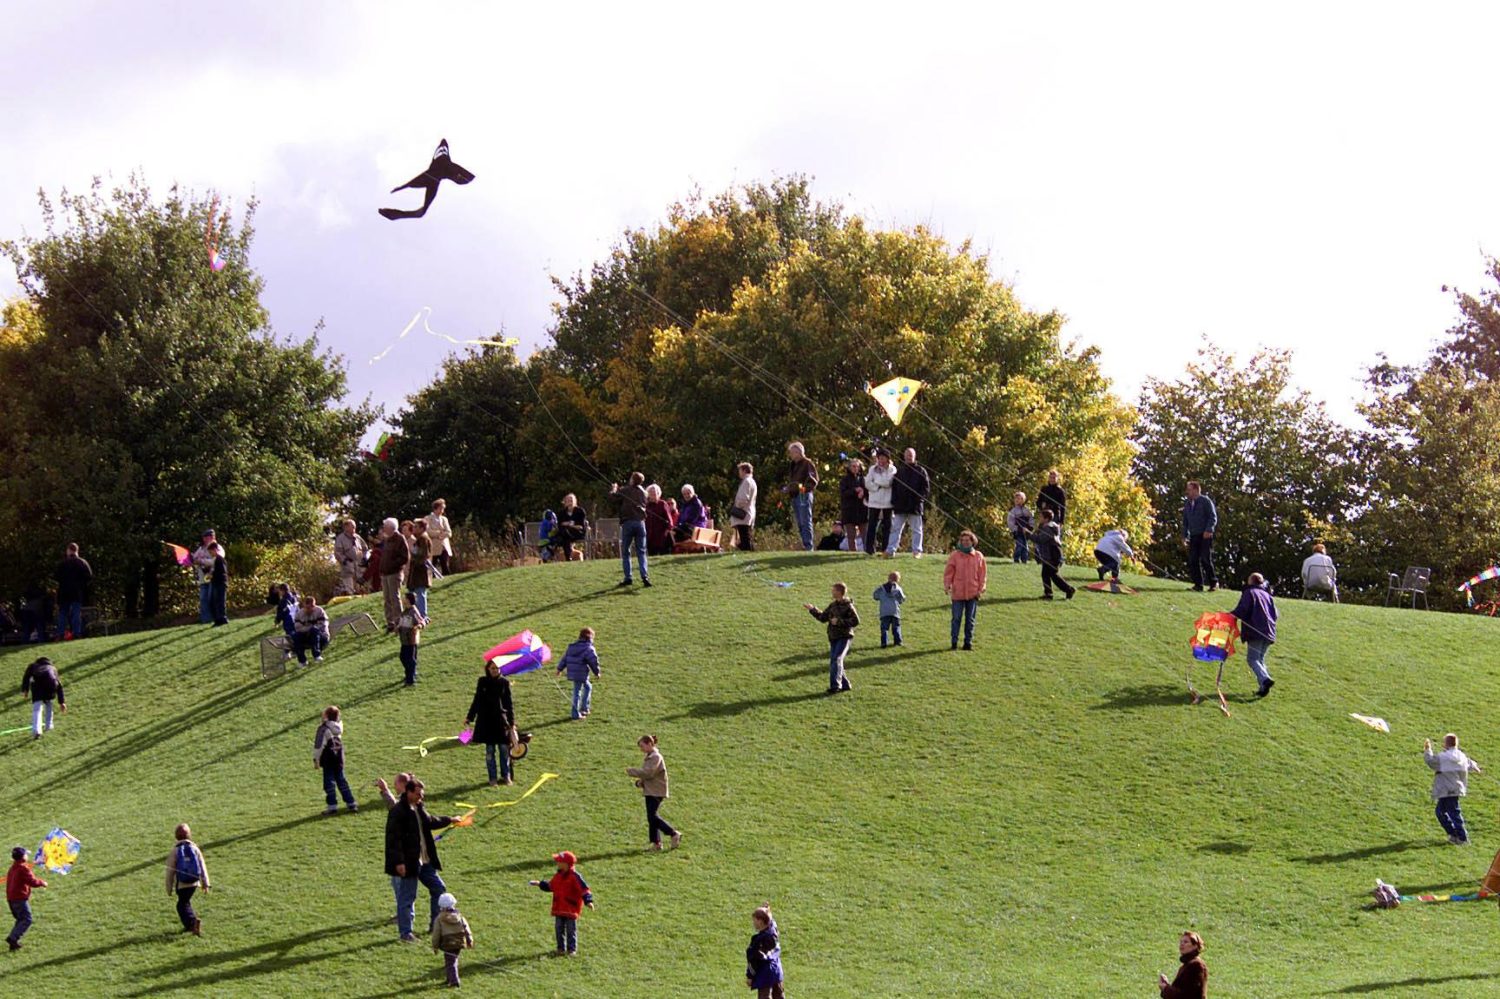 Das Drachenfest im Herbst, lockt viele Besucher auf die Wiesen des Britzer-Gartens in Neukölln. Einer der Hotspots unter den Drachensteigern. Foto: Imago/PEMAX